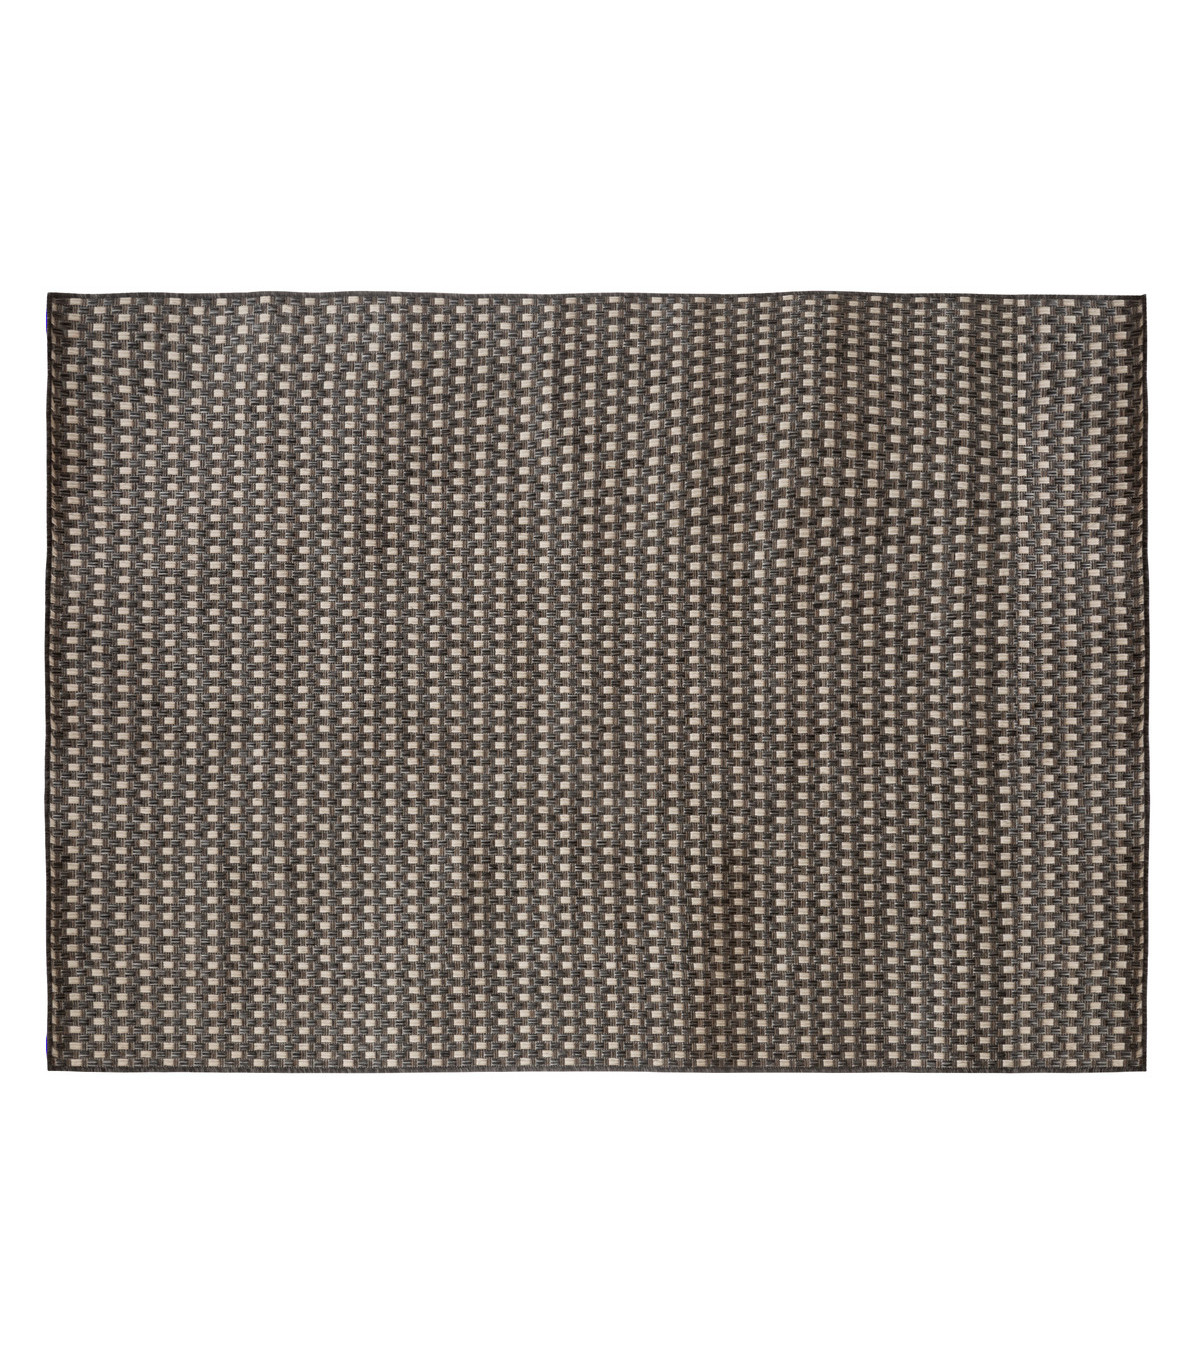 Tapis pour extérieur ou intérieur en polypropylène gris tissé en forme de croisillons 160 x 230 cm